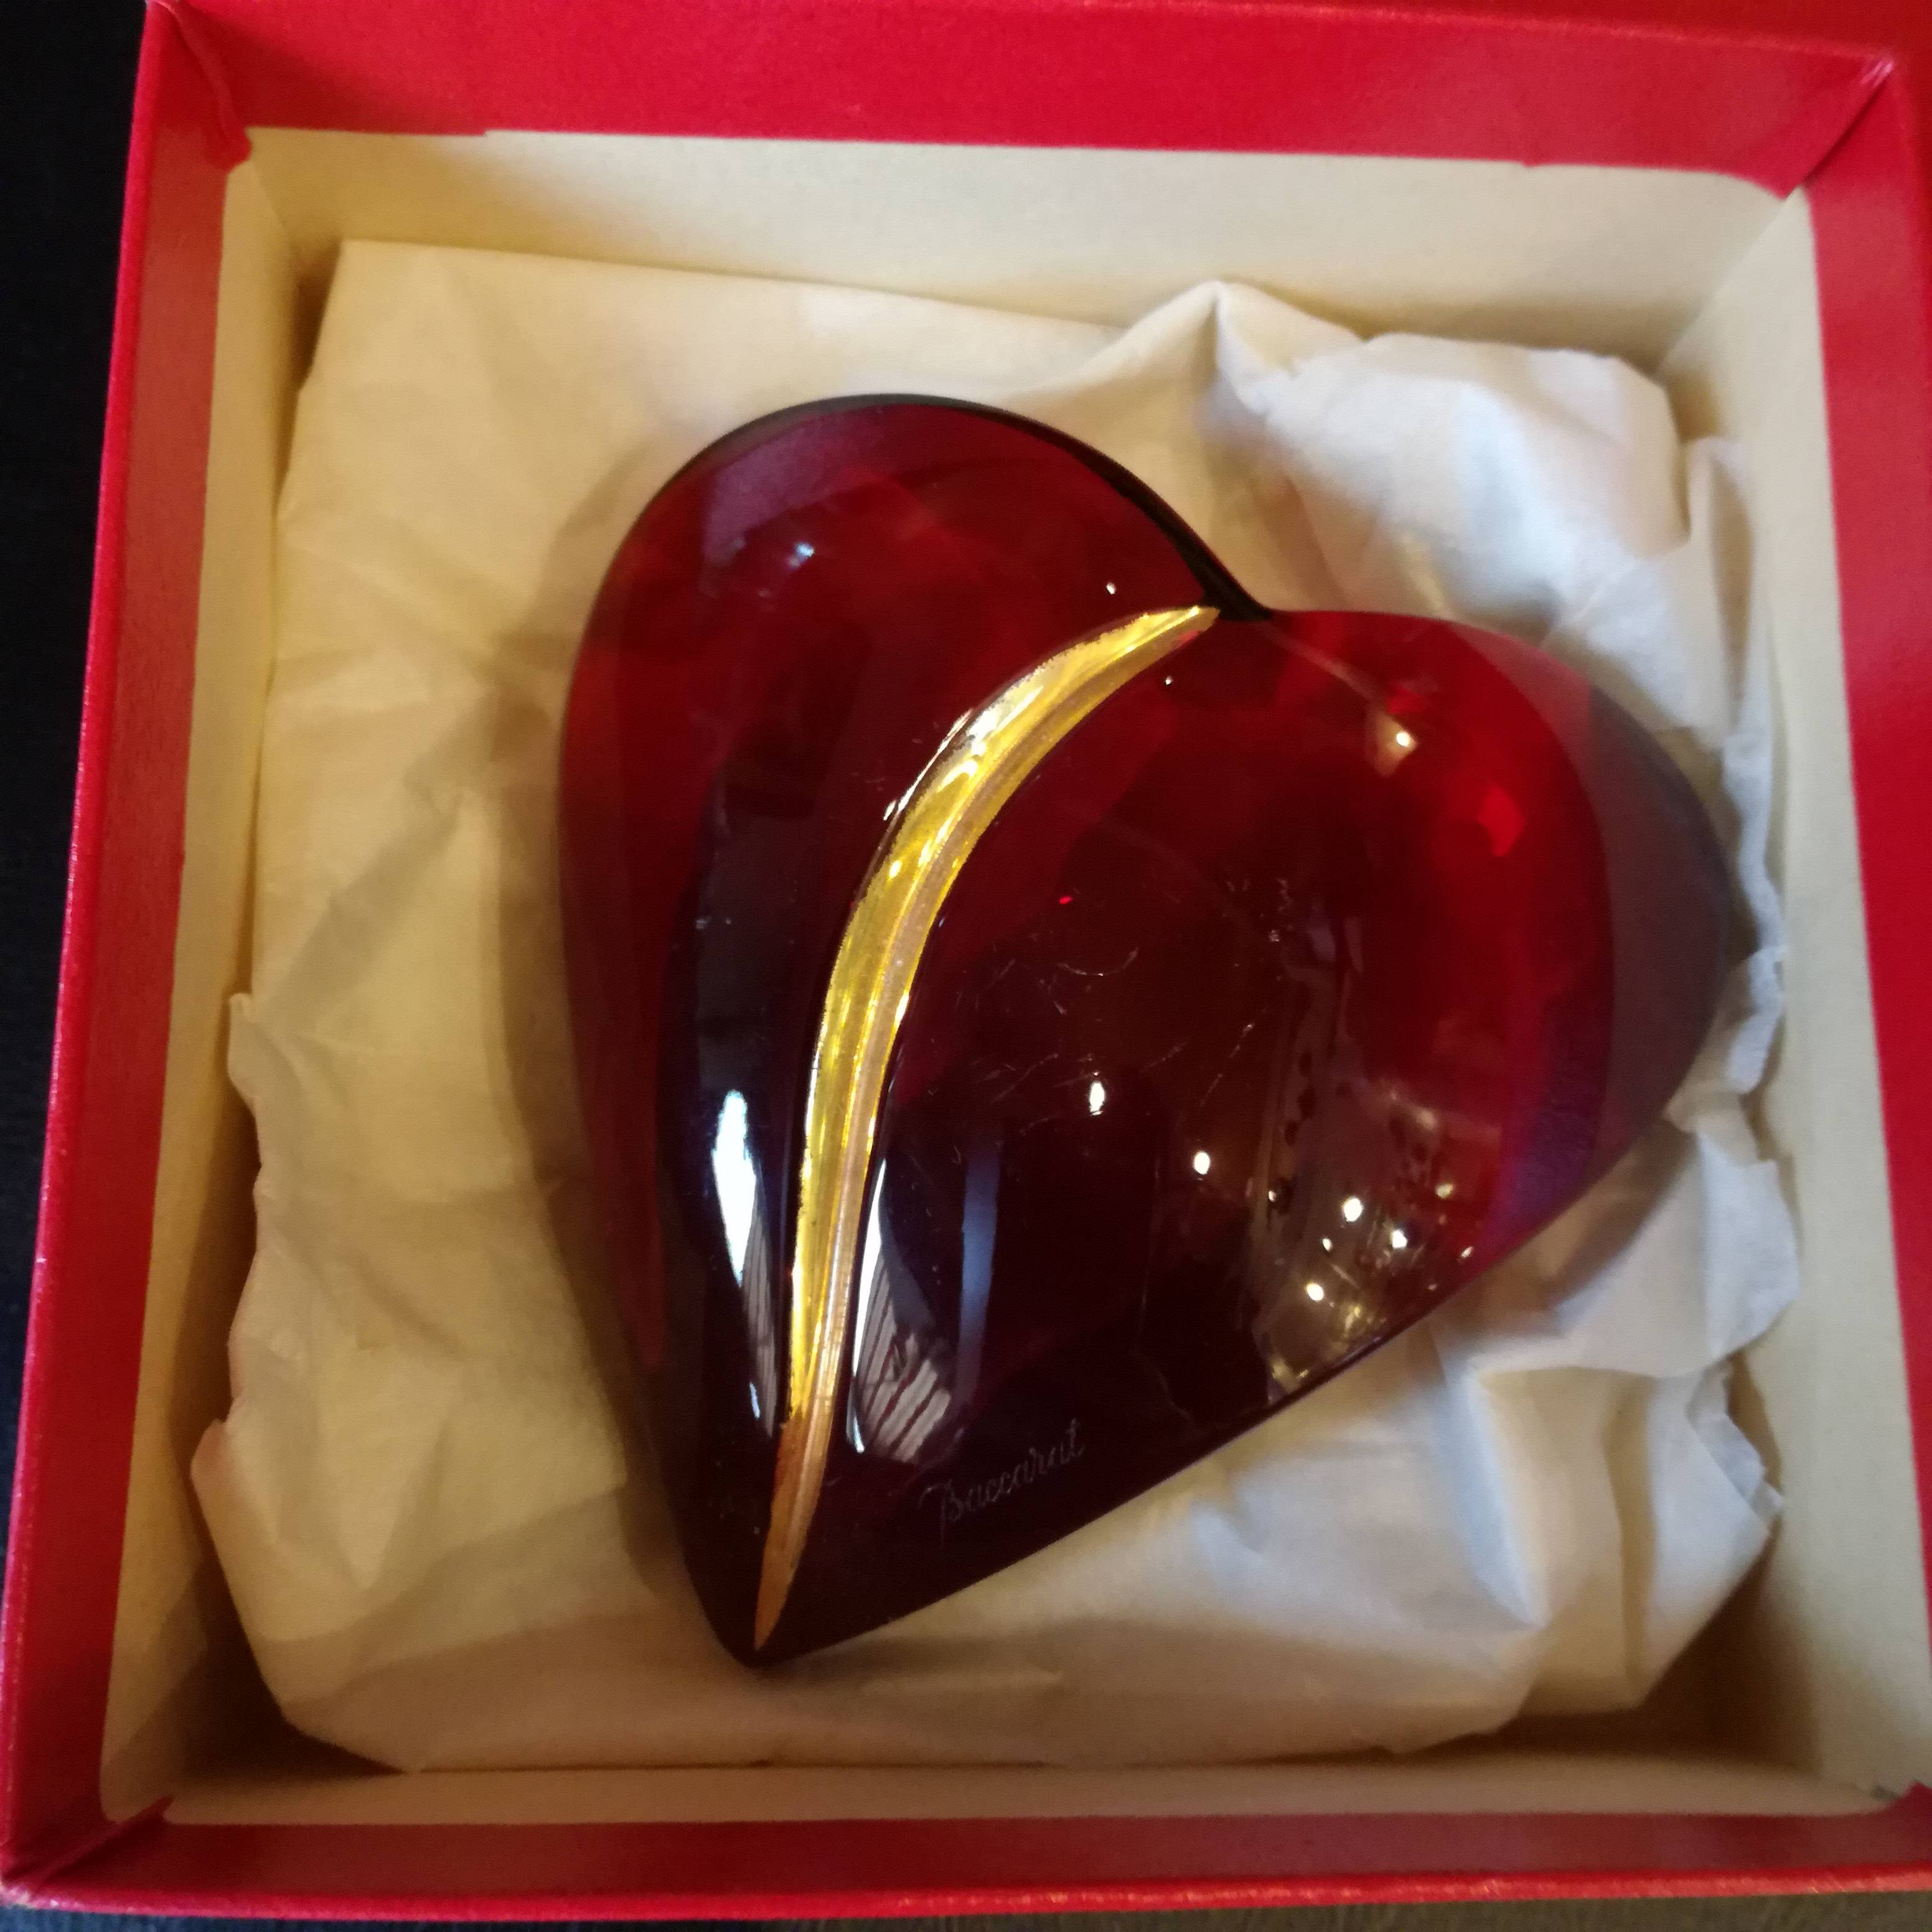 Presse papiers en forme de cœur en cristal Baccarat rouge boîte d'origine  et doré à l'or fin - Début de Série